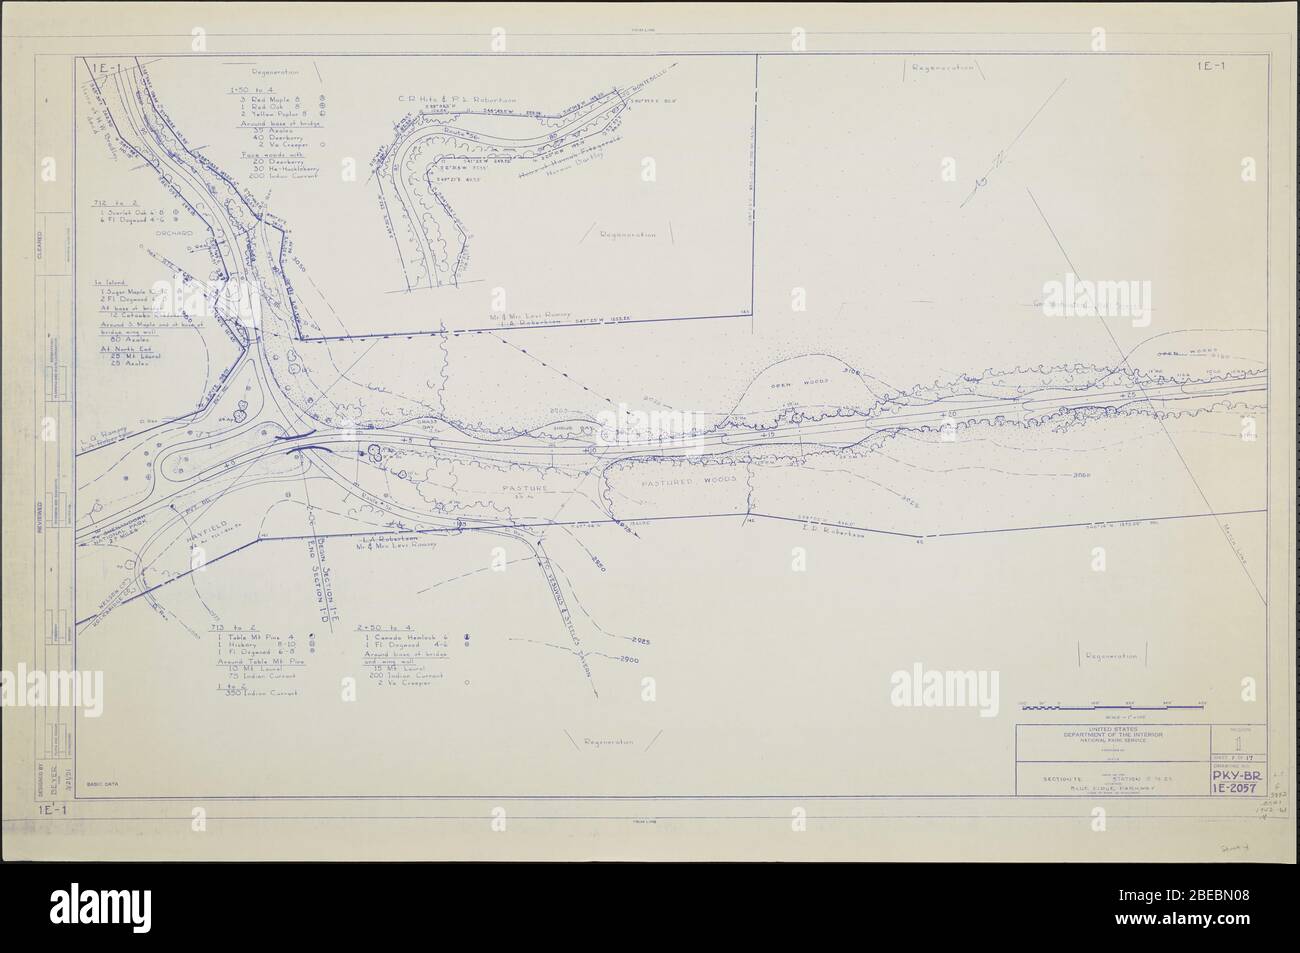 'Blue Ridge Parkway Karte, Region 1 Blatt 1; EINE Karte des Blue Ridge Parkway mit Details über die nahe gelegenen Bäume, Sträucher und Sämlinge. Zeichnung Nr. IE-1. Skala 1=100.; März 1951 Datum QS:P571,+1951-03-00T00:00:00Z/10; ' Stockfoto